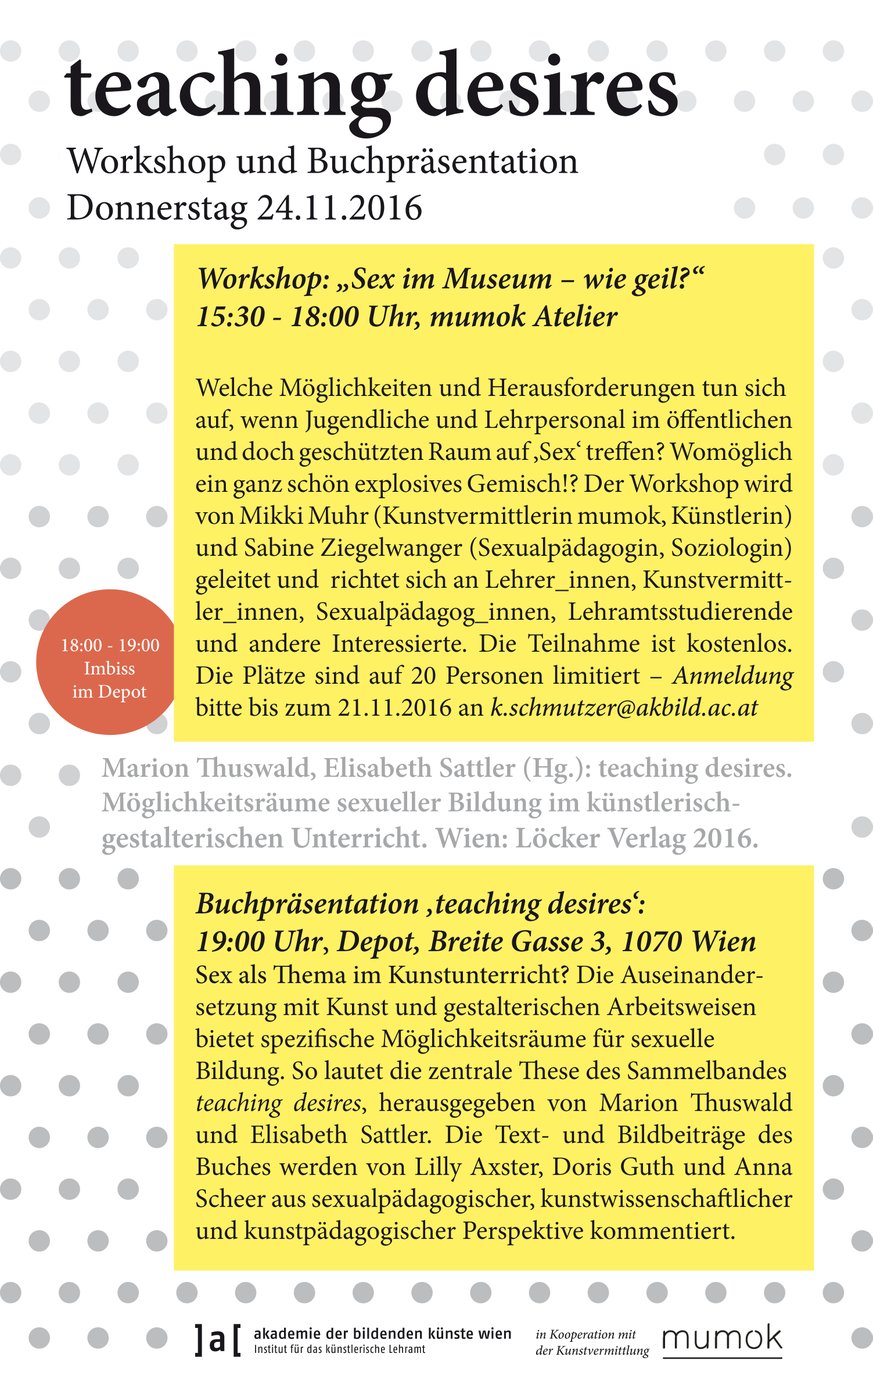 Herausgegeben von Marion Thuswald und Elisabeth Sattler, Löcker Verlag Wien 2016
 
 Vor der Buchpräsentation findet ein Workshop mit Mikki Muhr (Kunstvermittlerin mumok, Künstlerin) und Sabine Ziegelwanger (Sexualpädagogin, Soziologin) in Kooperation mit der Kunstvermittlung des mumok statt.